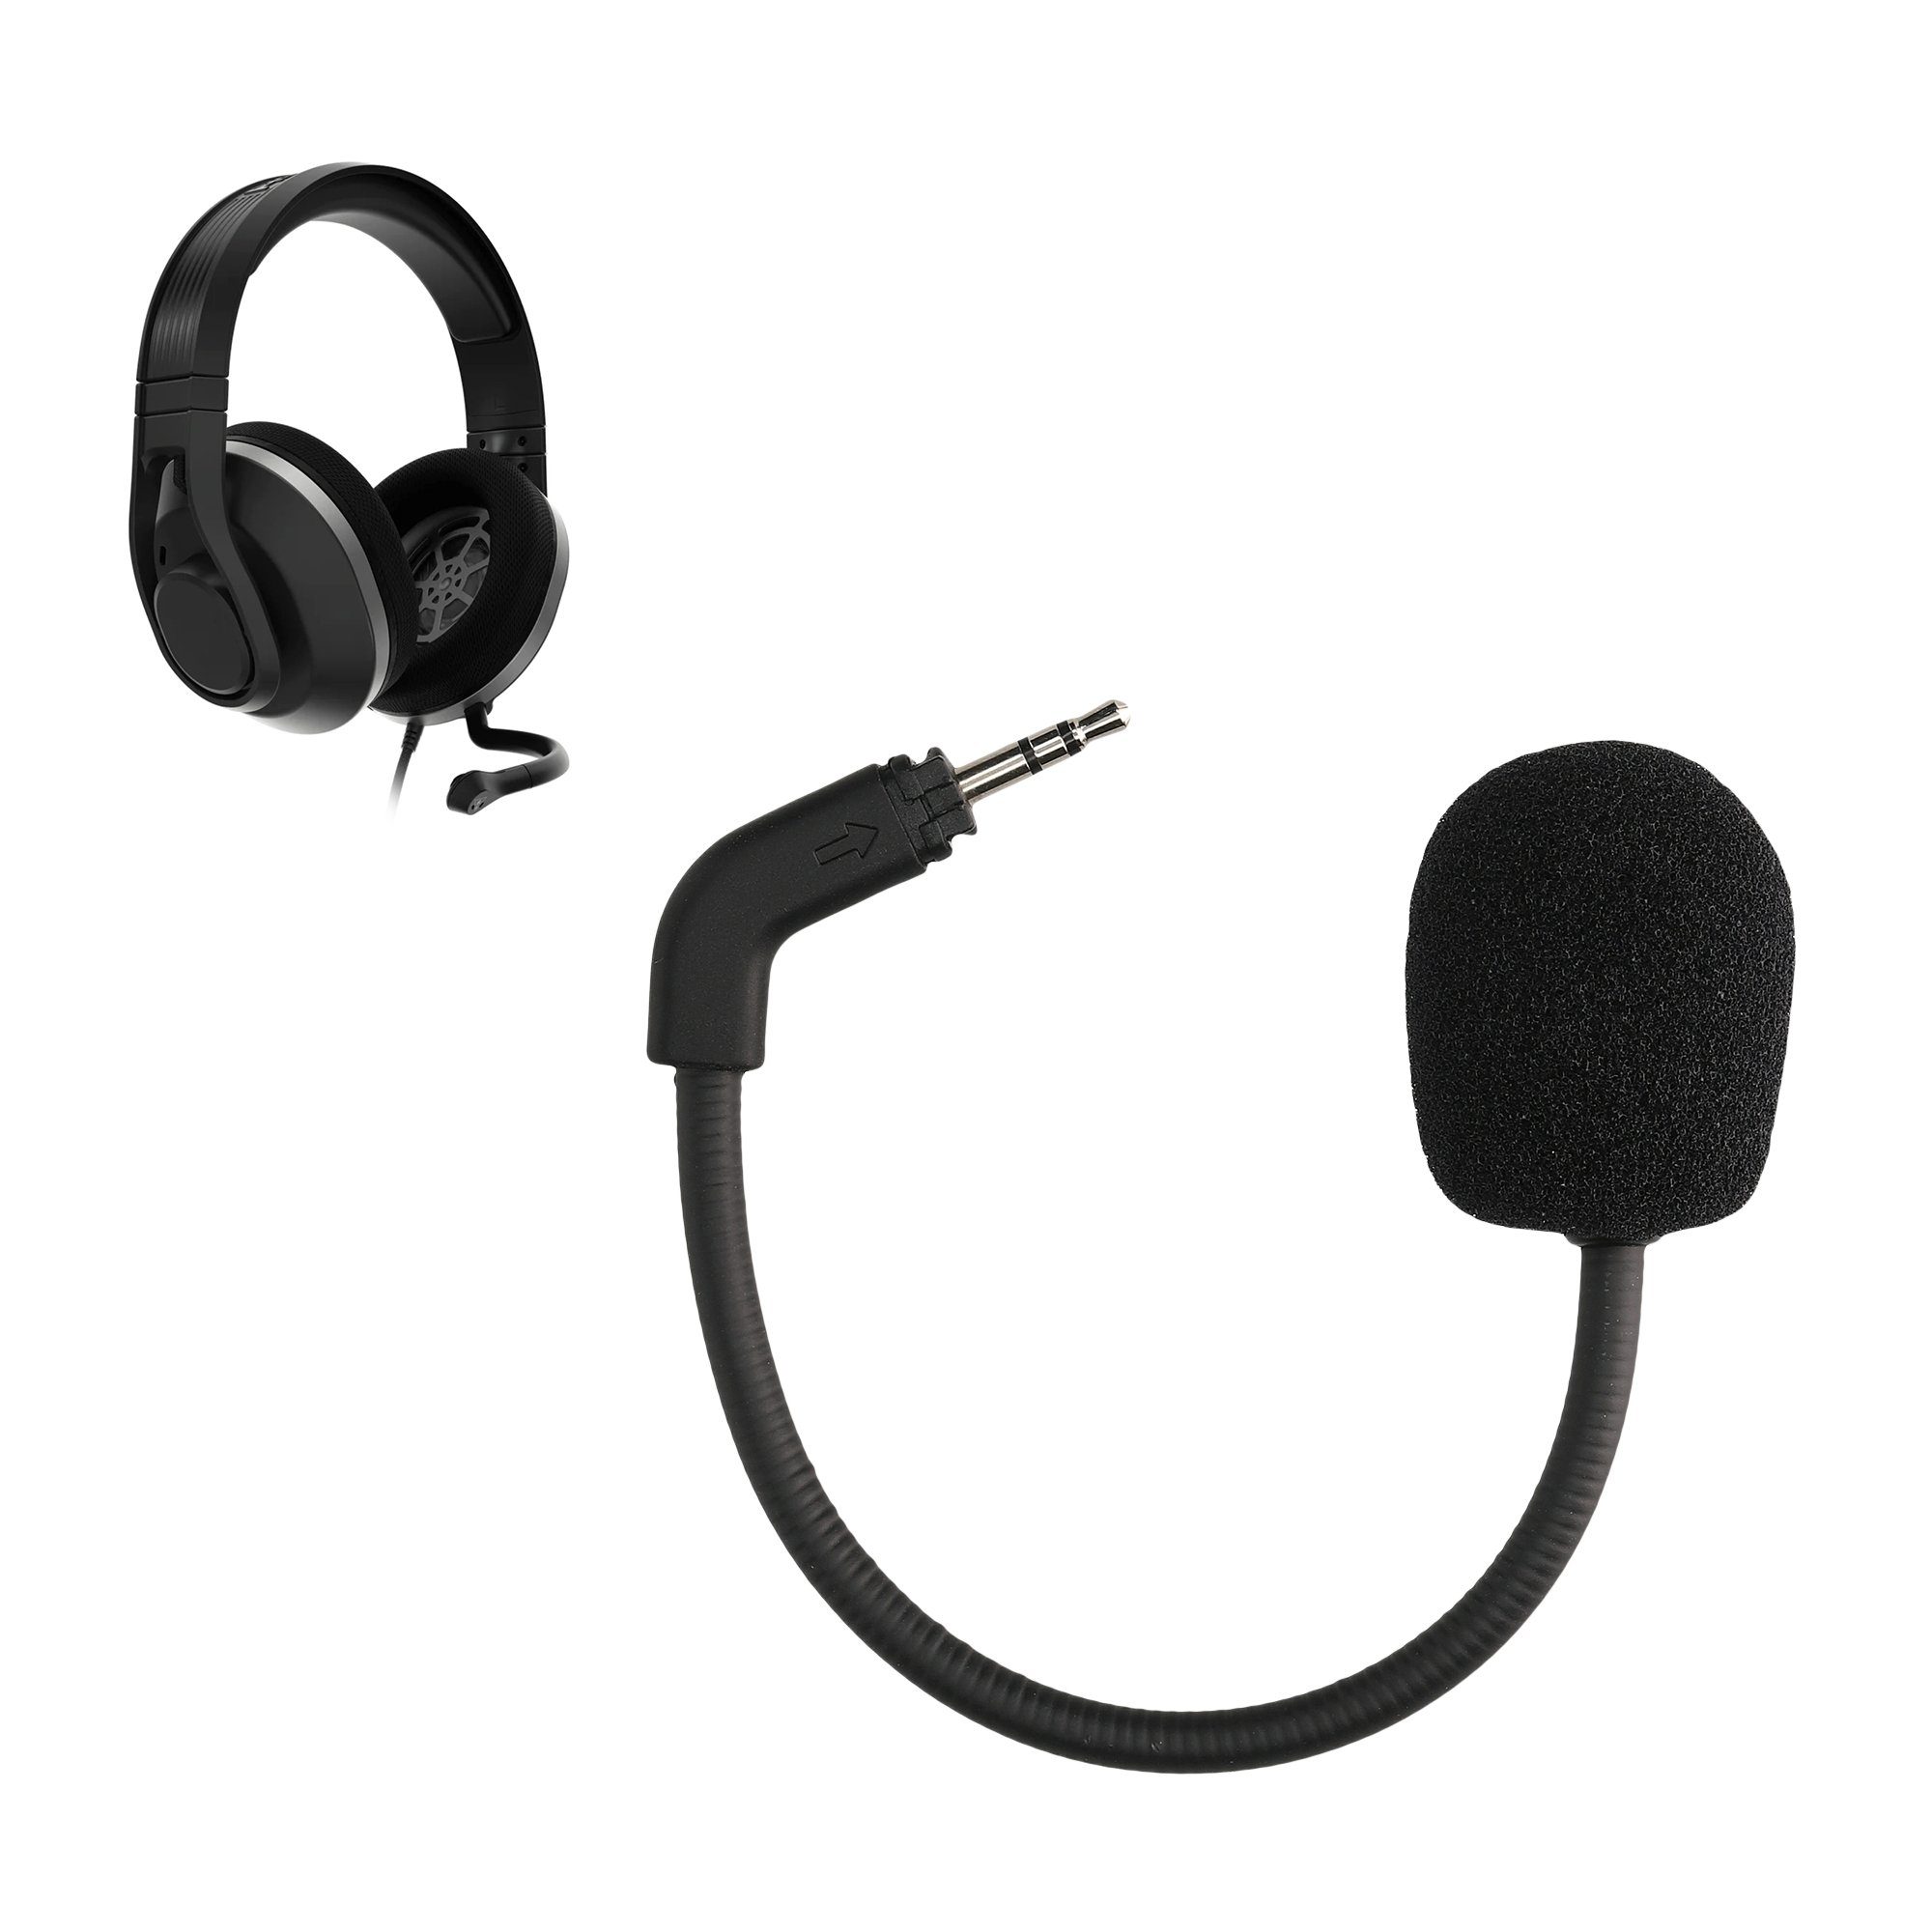 Ersatz Kopfhörer kwmobile Microphone) Recon Mikrofon Zubehör für (Headset Gaming-Headset 500 TurtleBeach